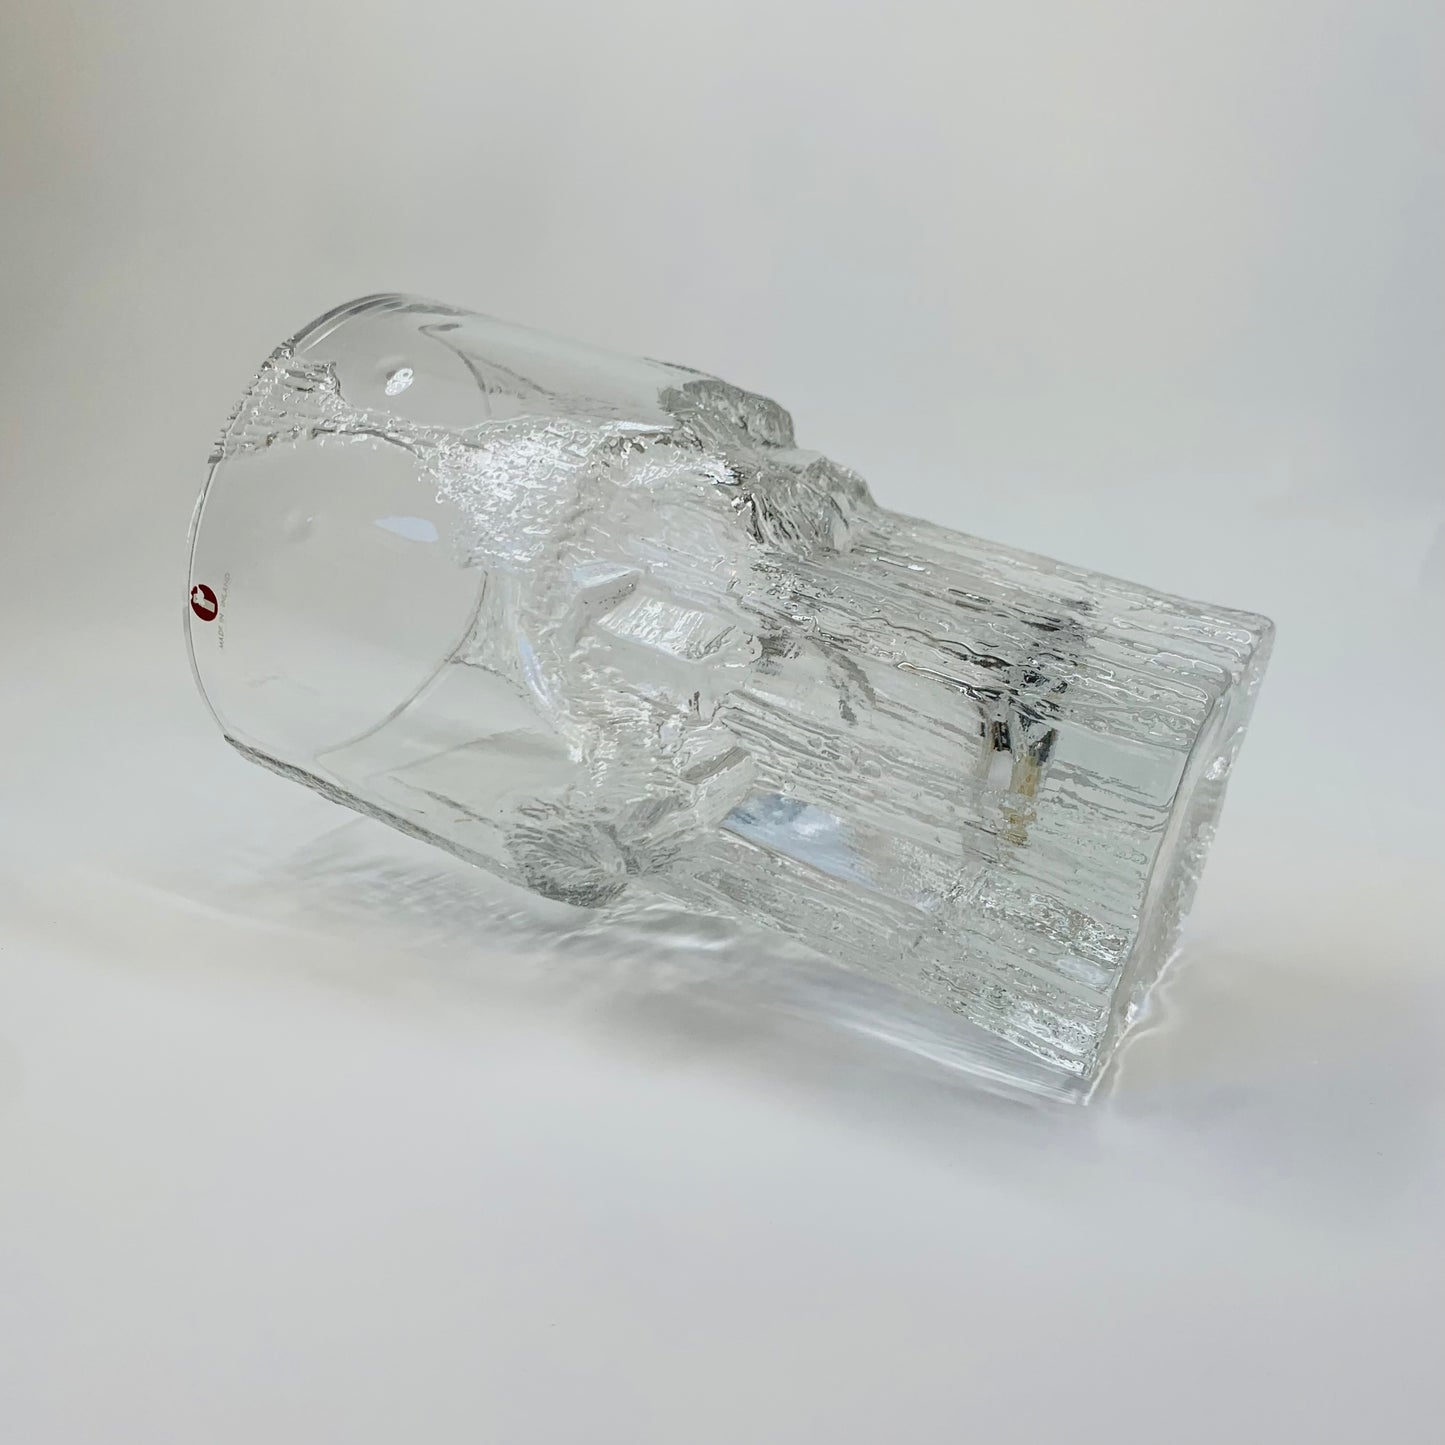 IITTALA ICE GLASS VASE